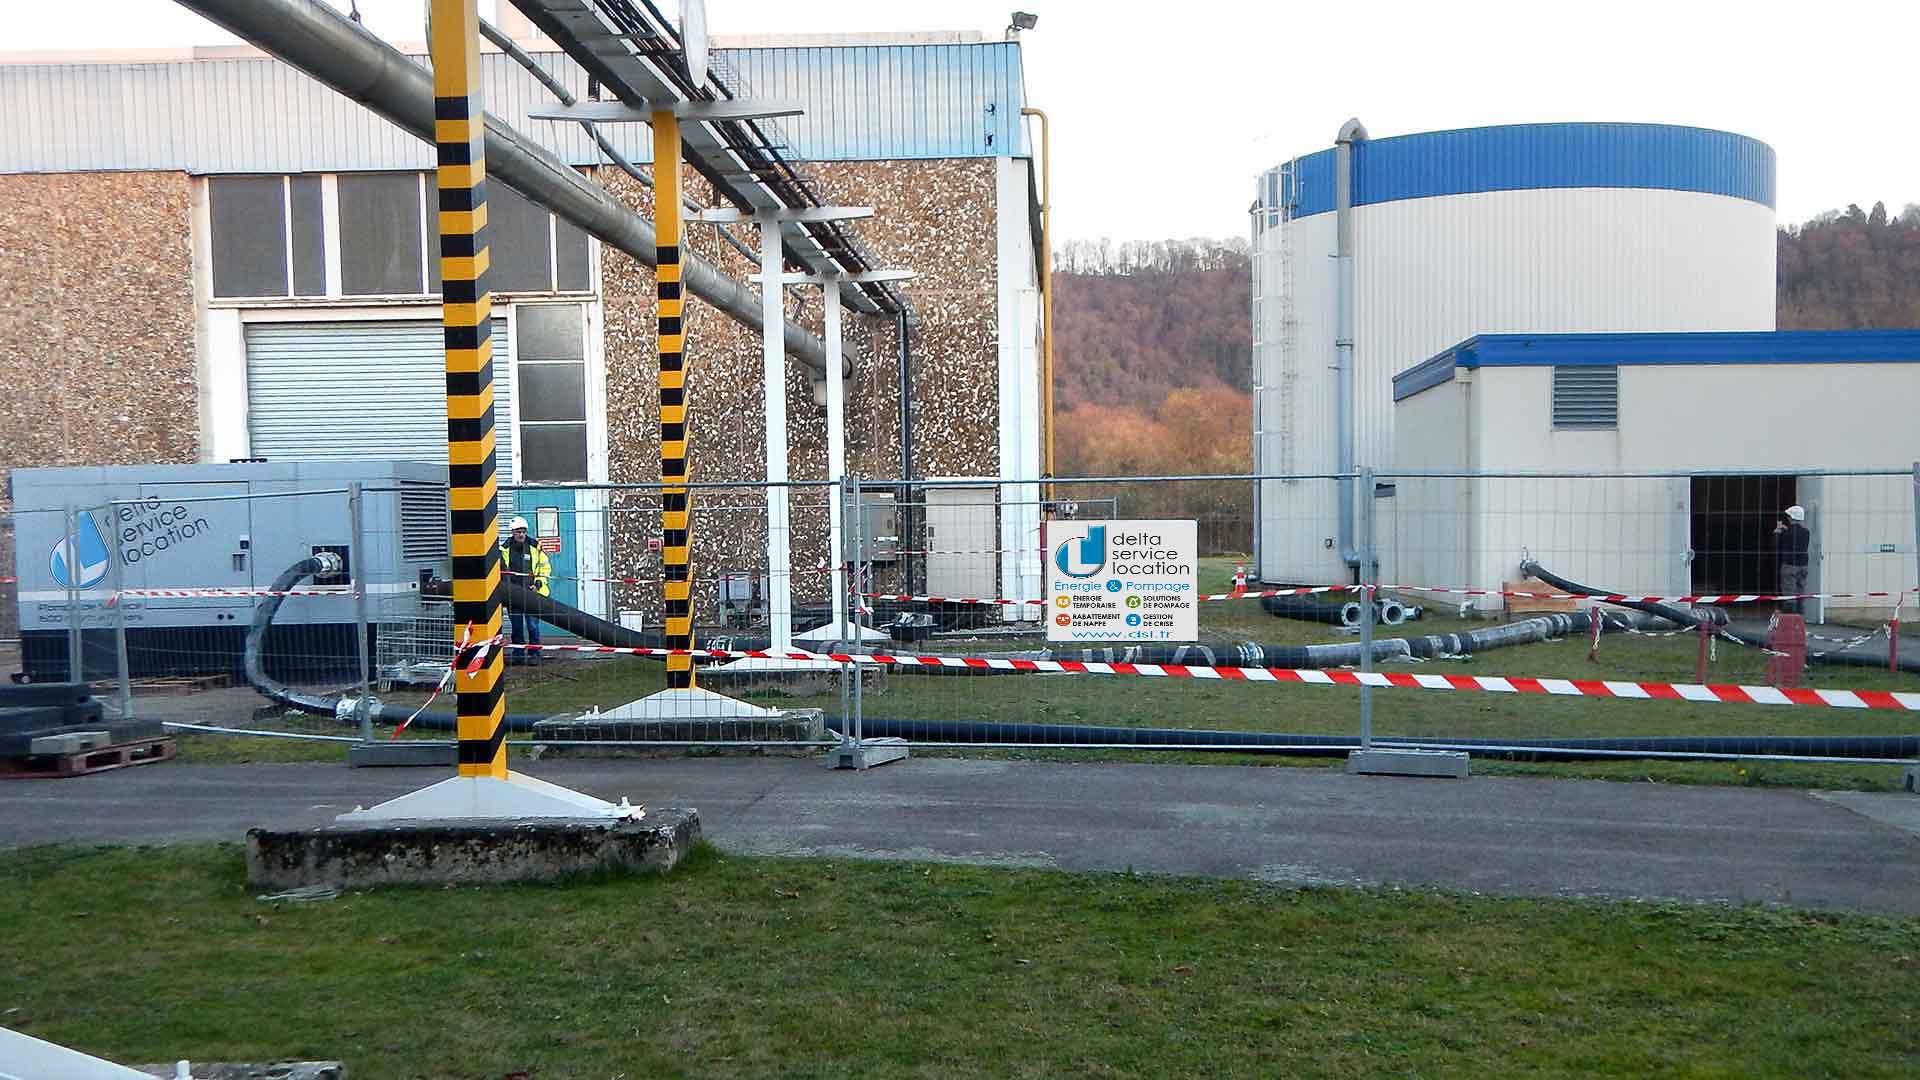 Pompe industrielle GIES installée sur site